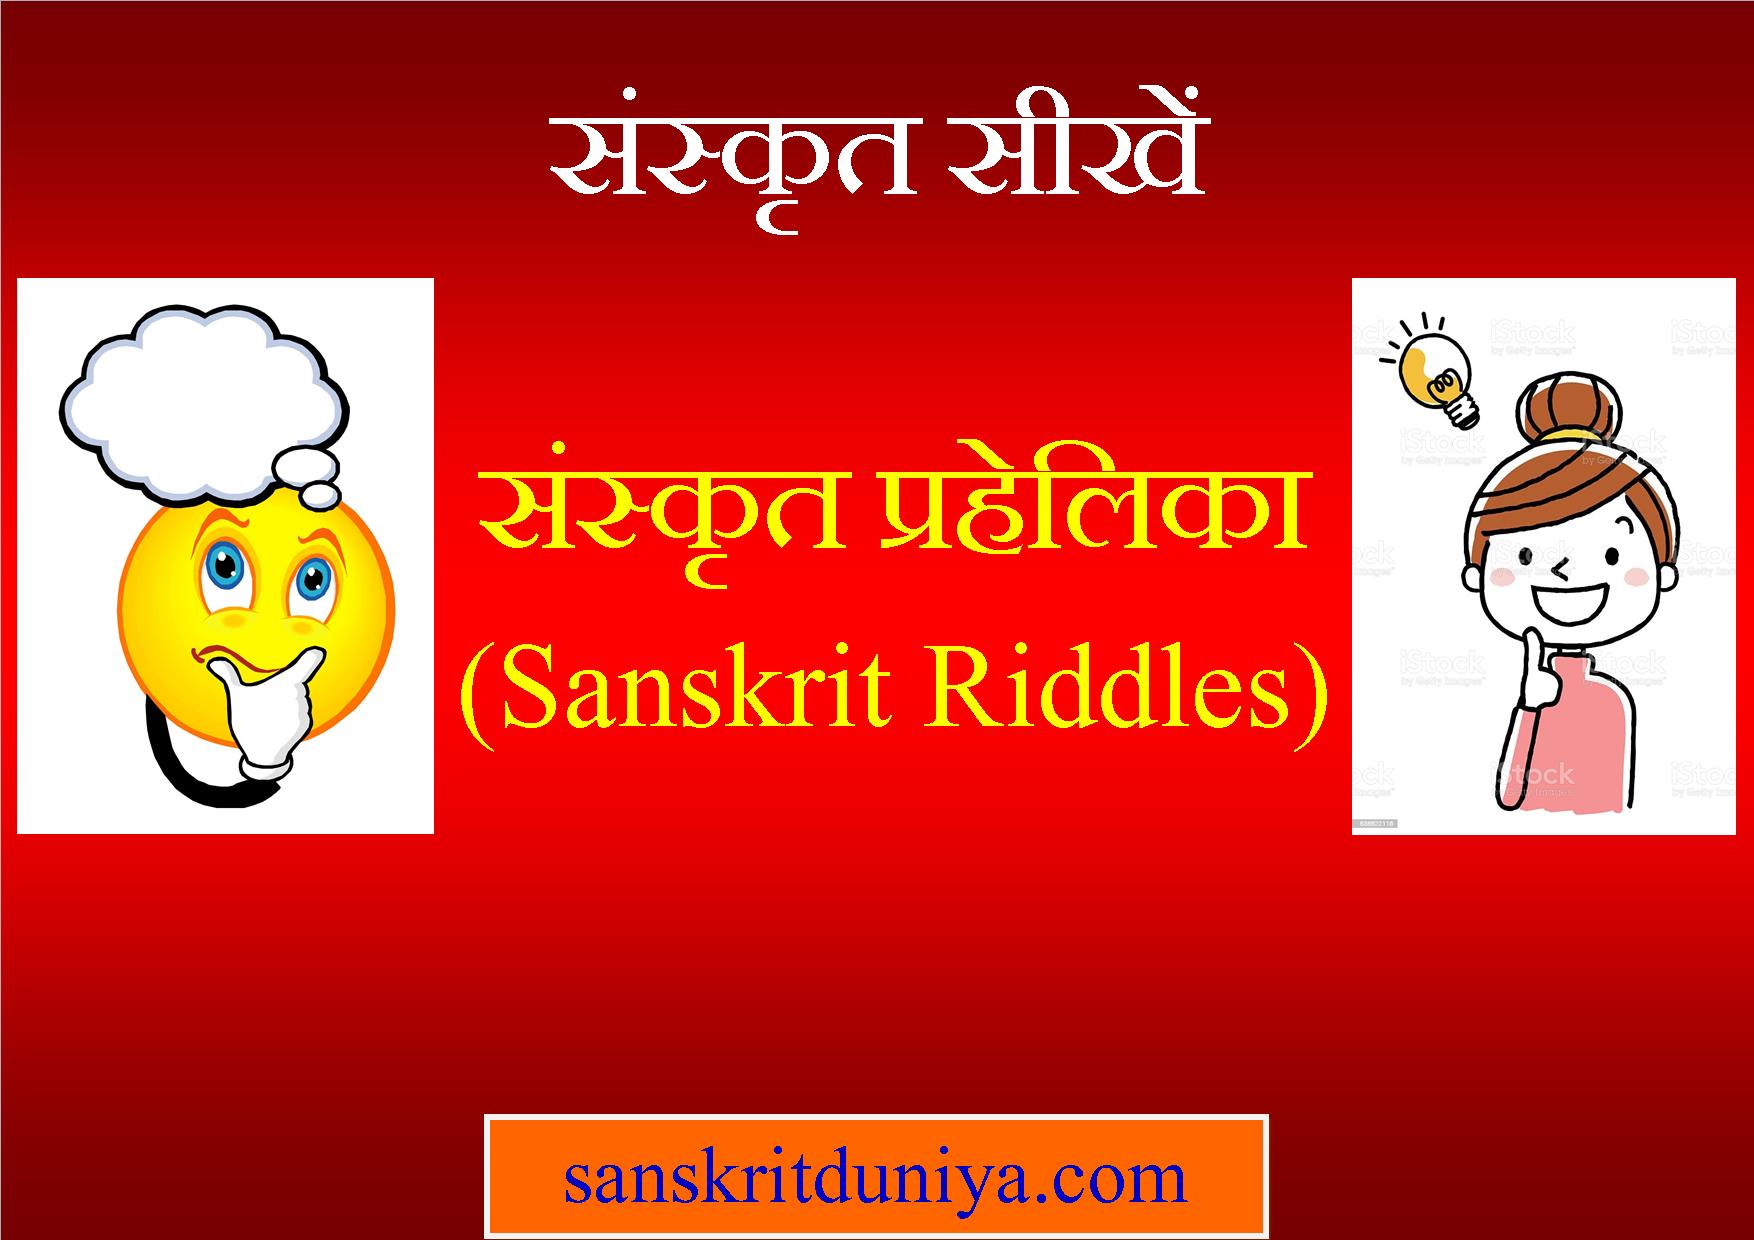 Sanskrit Riddles